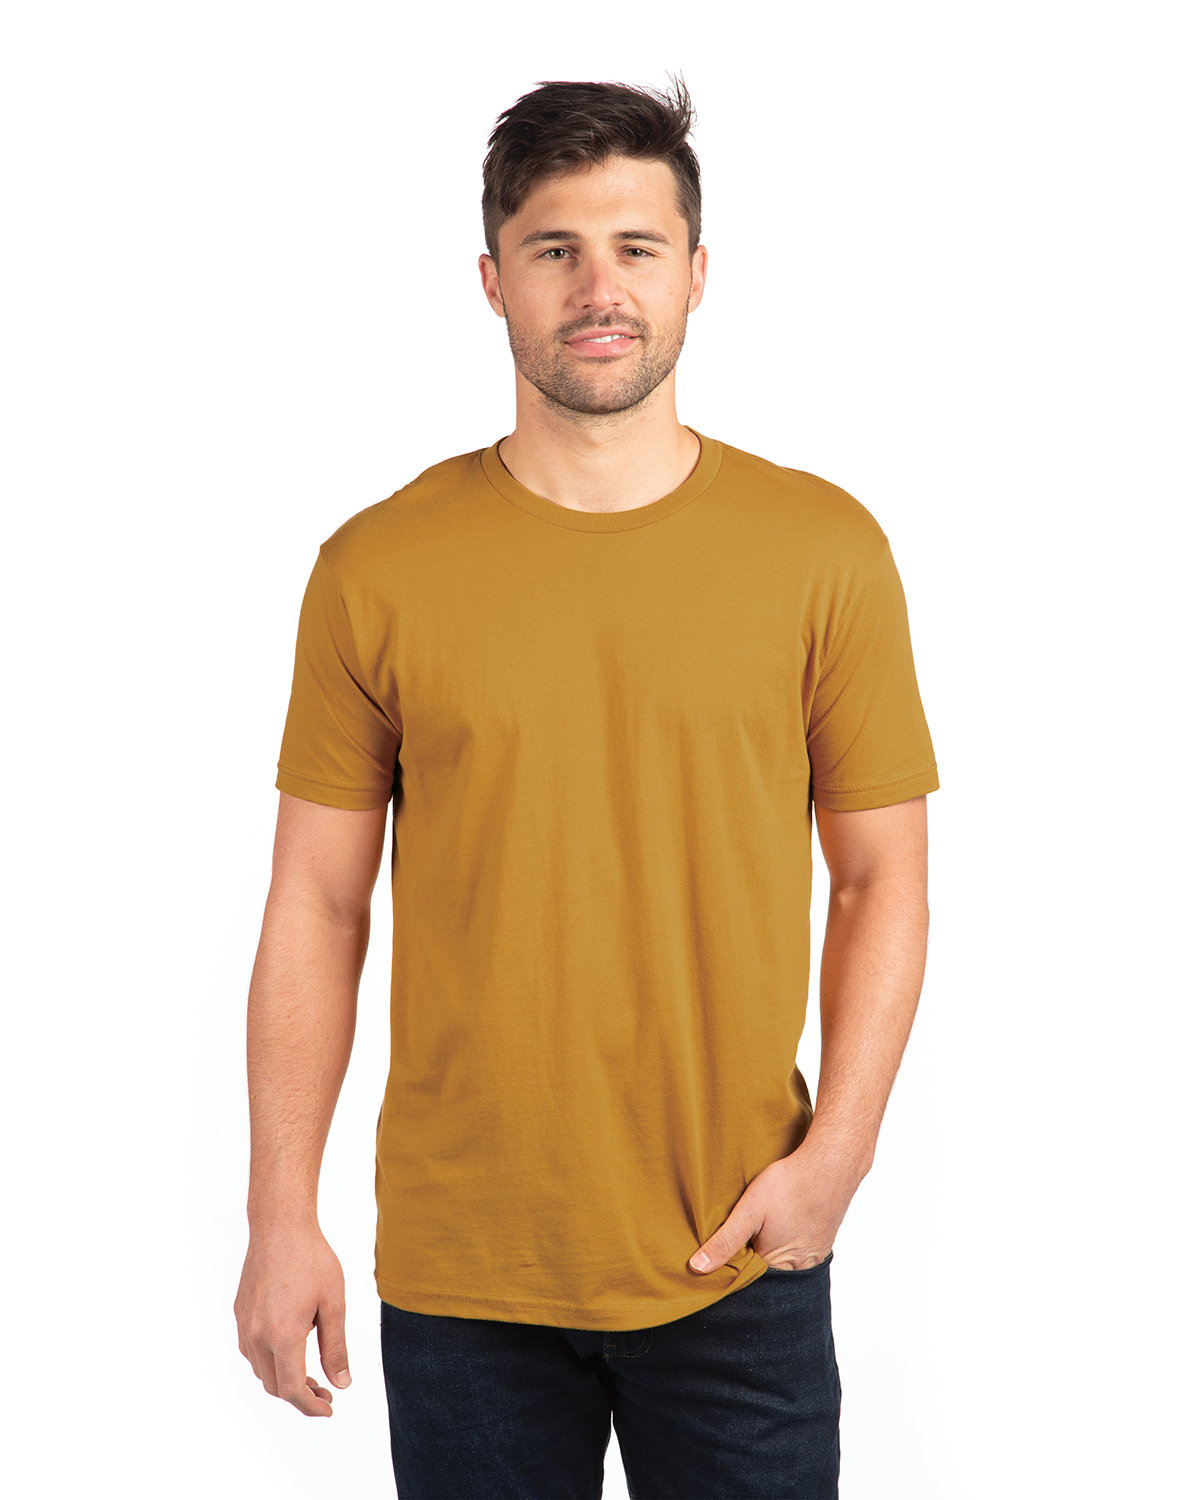 Next Level Apparel Unisex Cotton T-Shirt ANTIQUE GOLD 